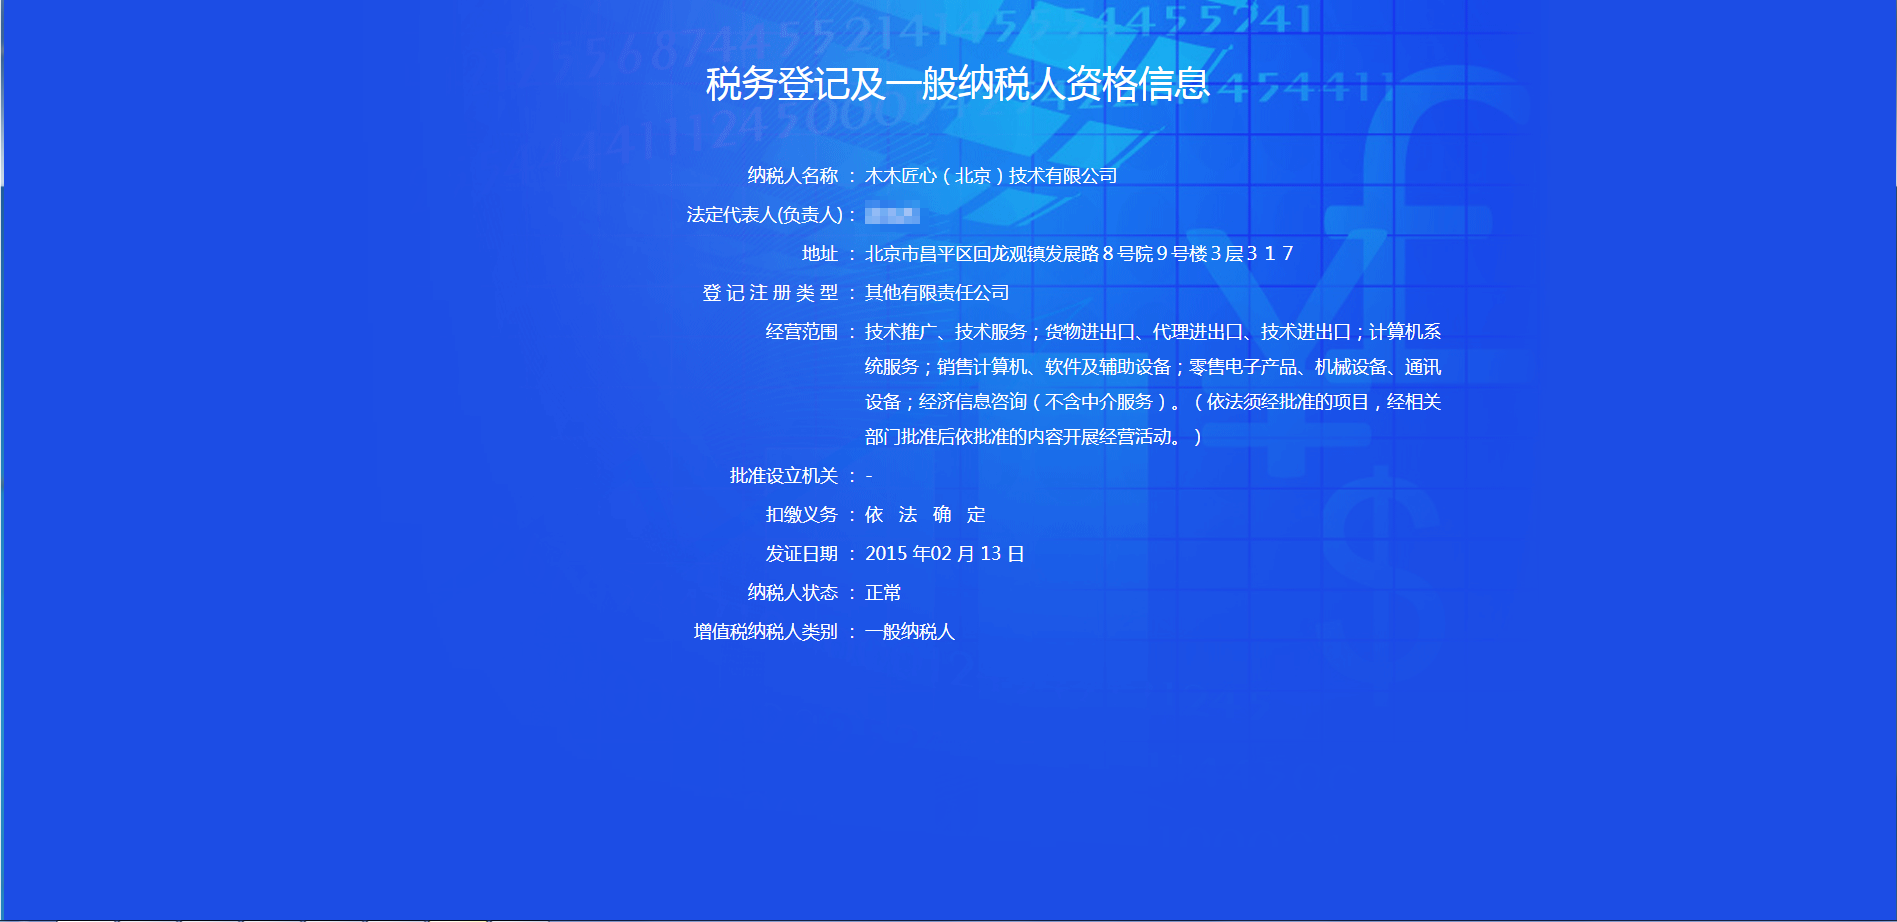 北京液晶拼接屏一般纳税人